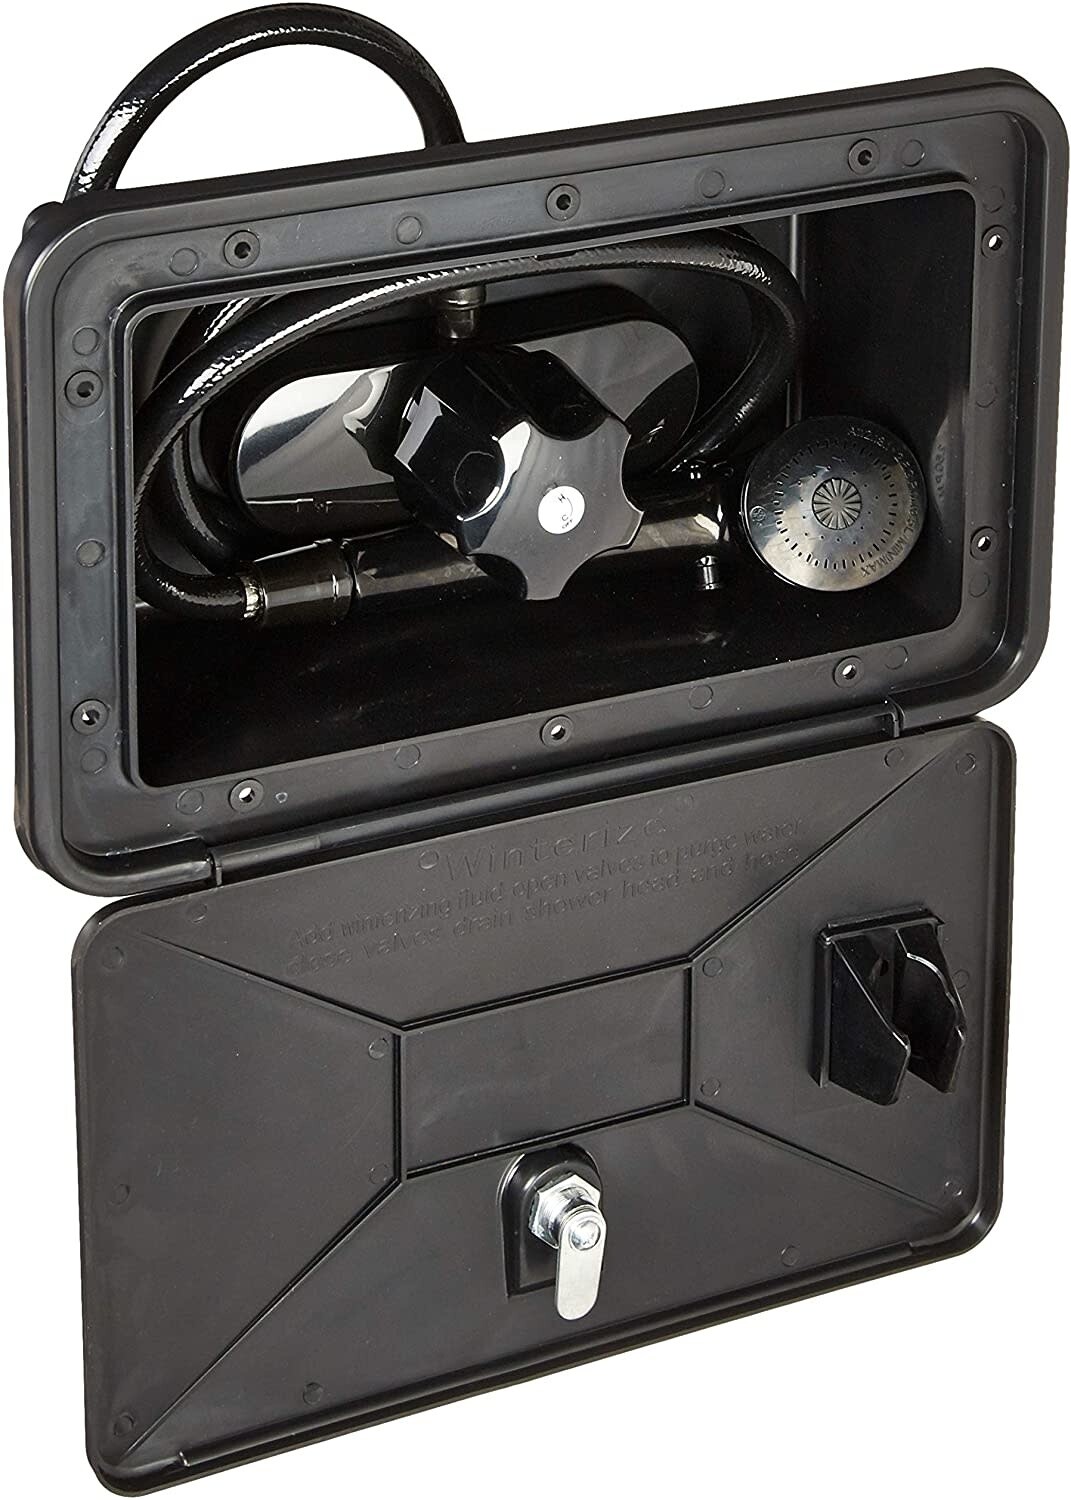 RV Exterior Shower Box Kit Black (SHWRBOX-1-BLK)